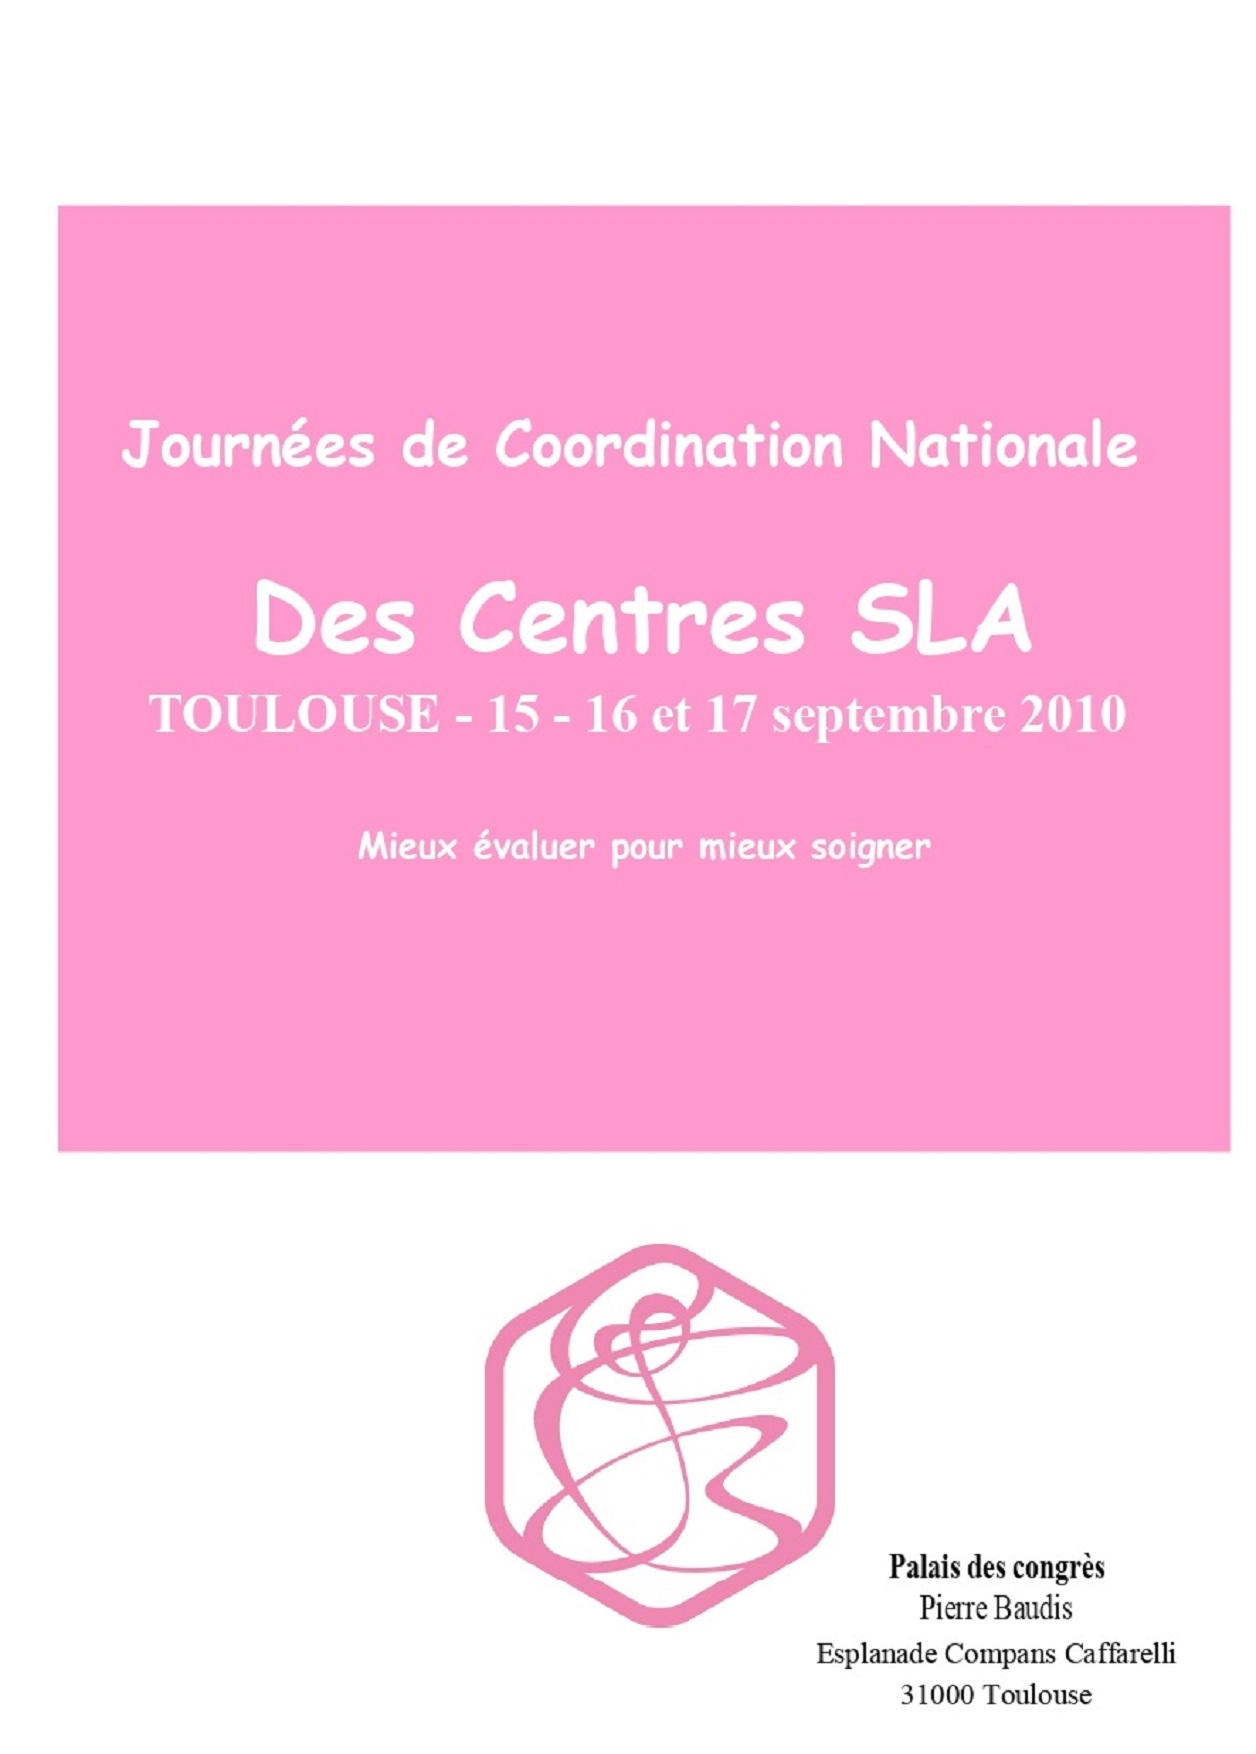 2010 JDC Programme Toulouse